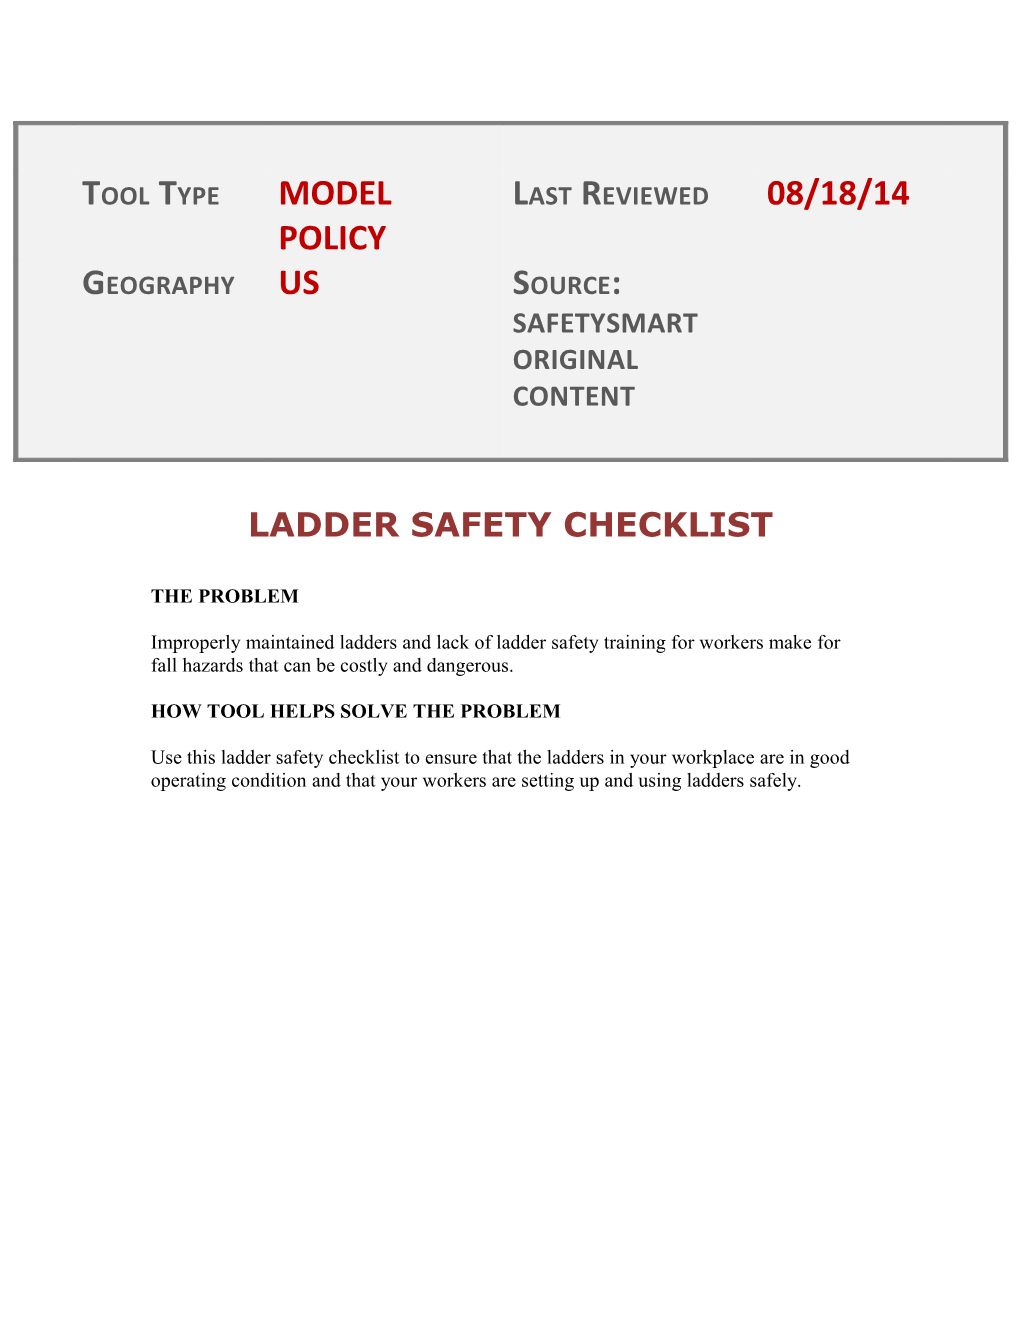 Ladder Safety Checklist